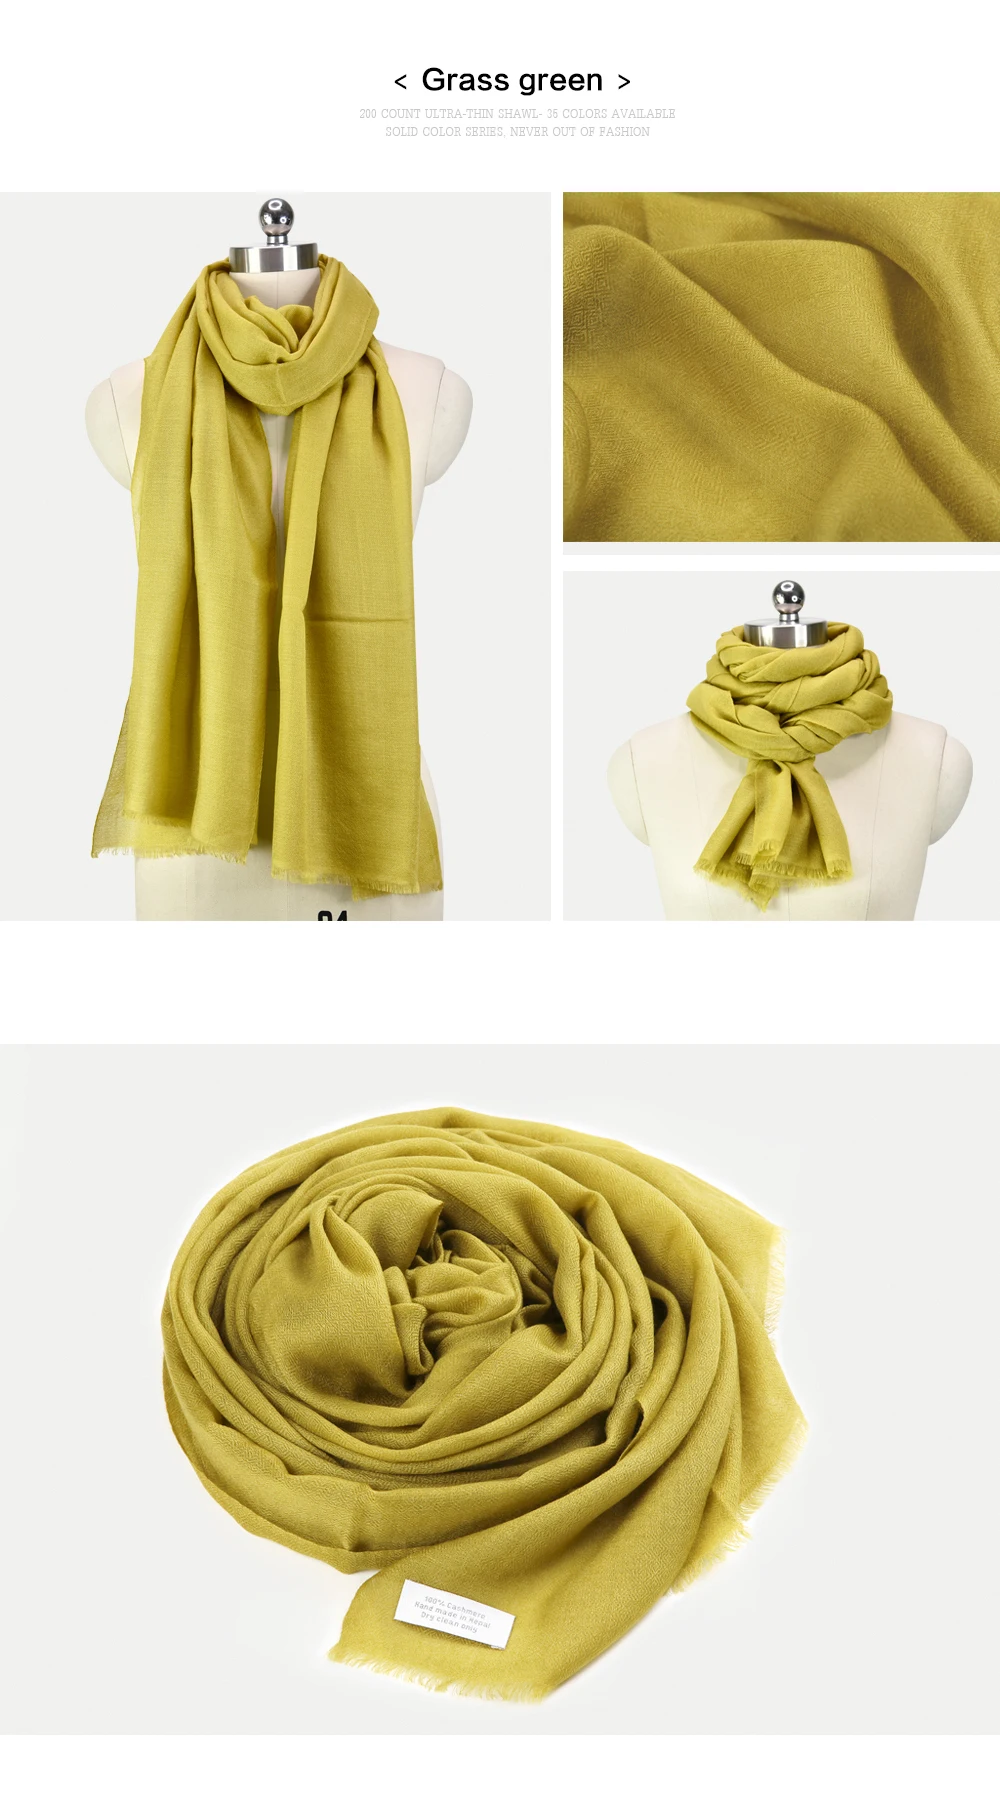 Ультра тонкий непальский кашемир/Пашмина сплошной цвет шарф шаль глушитель с фабрики мягкие и удобные